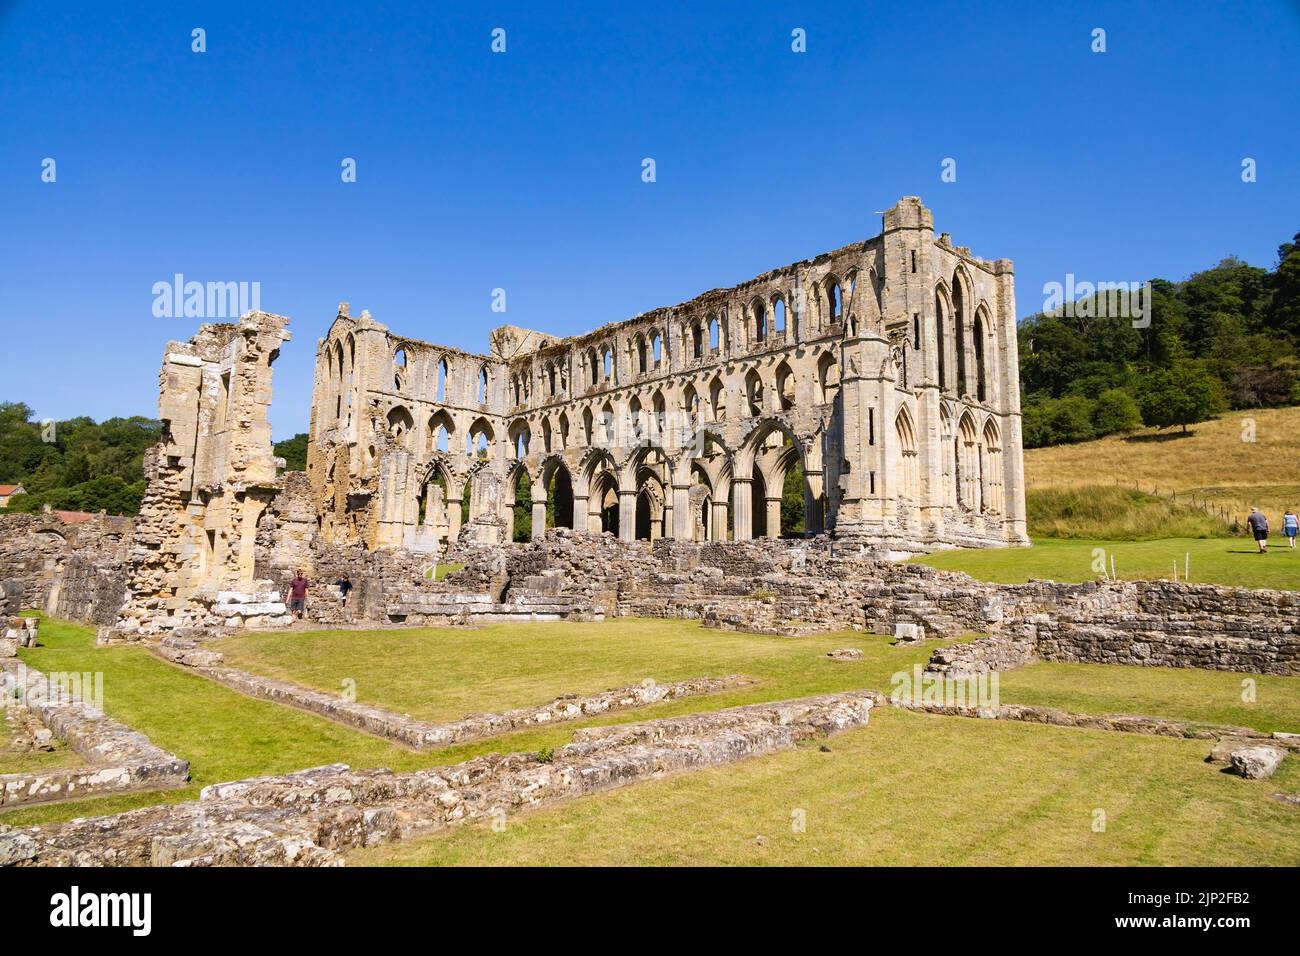 Abbaye de Rievaulx, Abbaye de la vallée de Rye, ruines près de Helmsley, Yorkshire du Nord, Angleterre. Banque D'Images